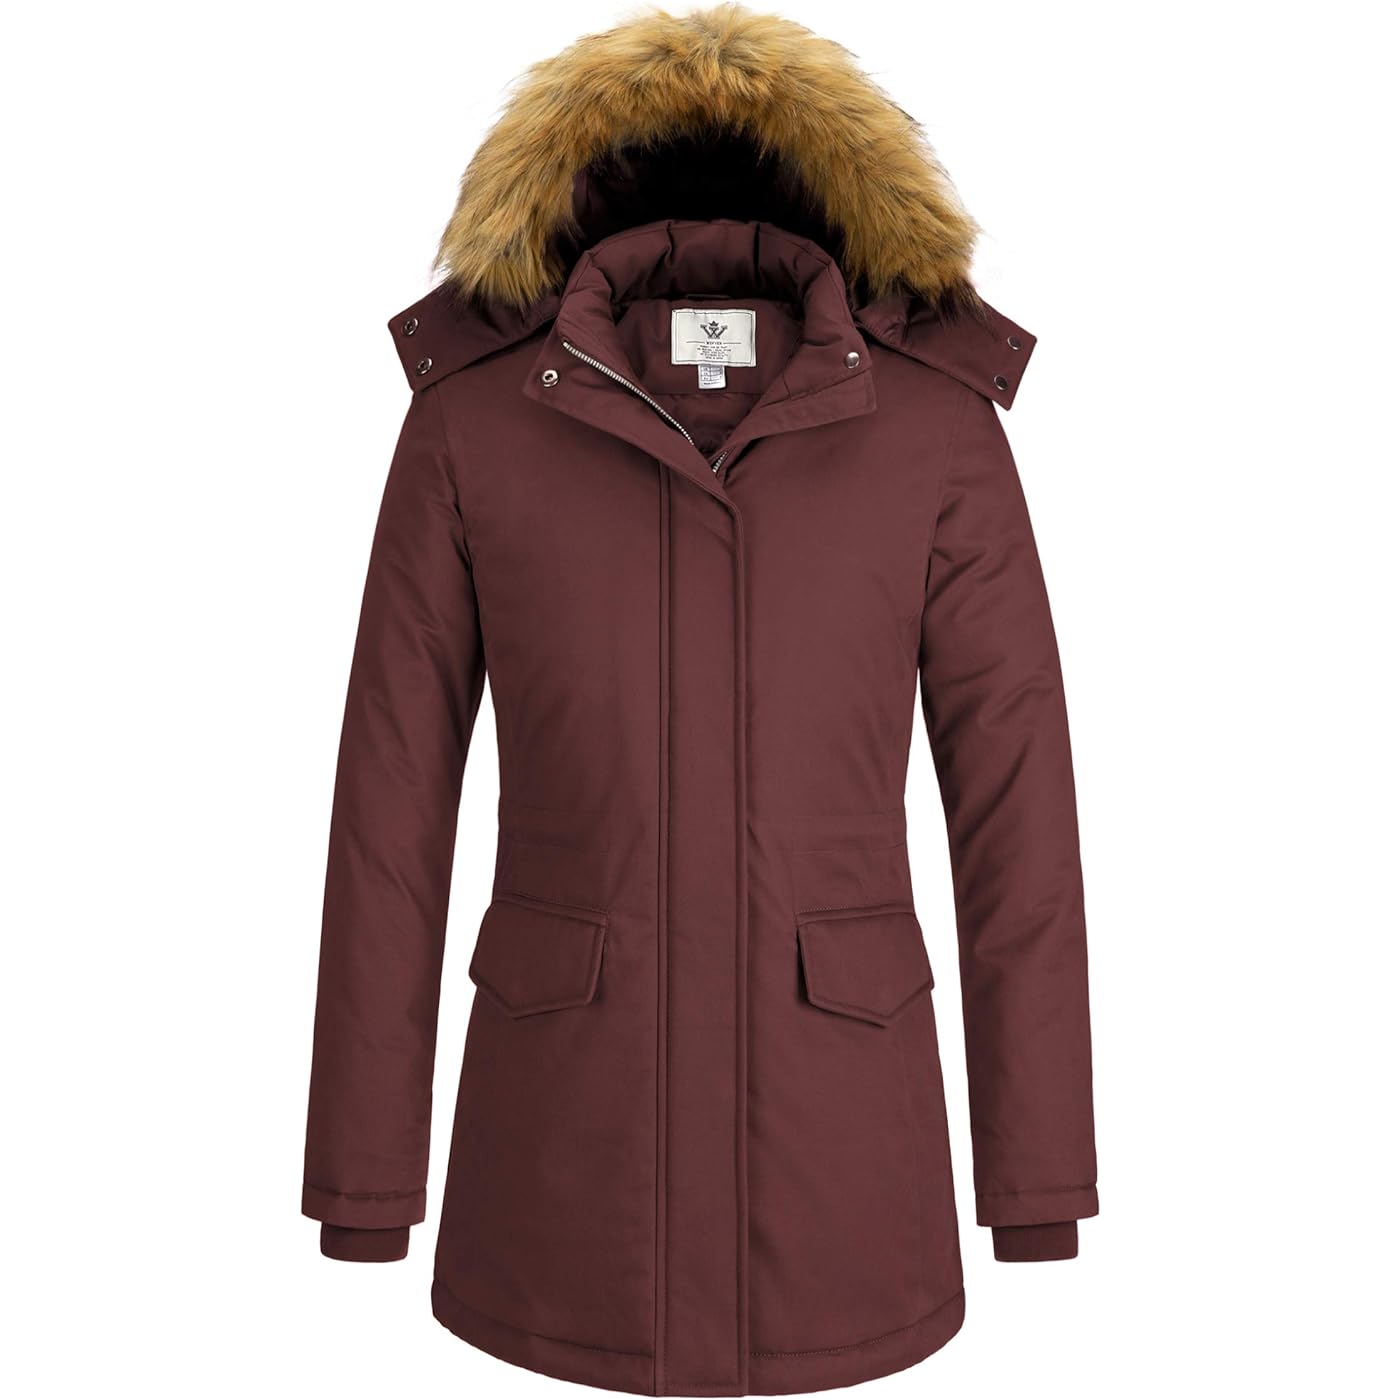 Куртка WenVen Winter Thickened Warm Mid Length Windproof and Waterproof With a Detachable Fur Hat, бордовый куртка стеганая средней длины с пришитым капюшоном зимняя l синий